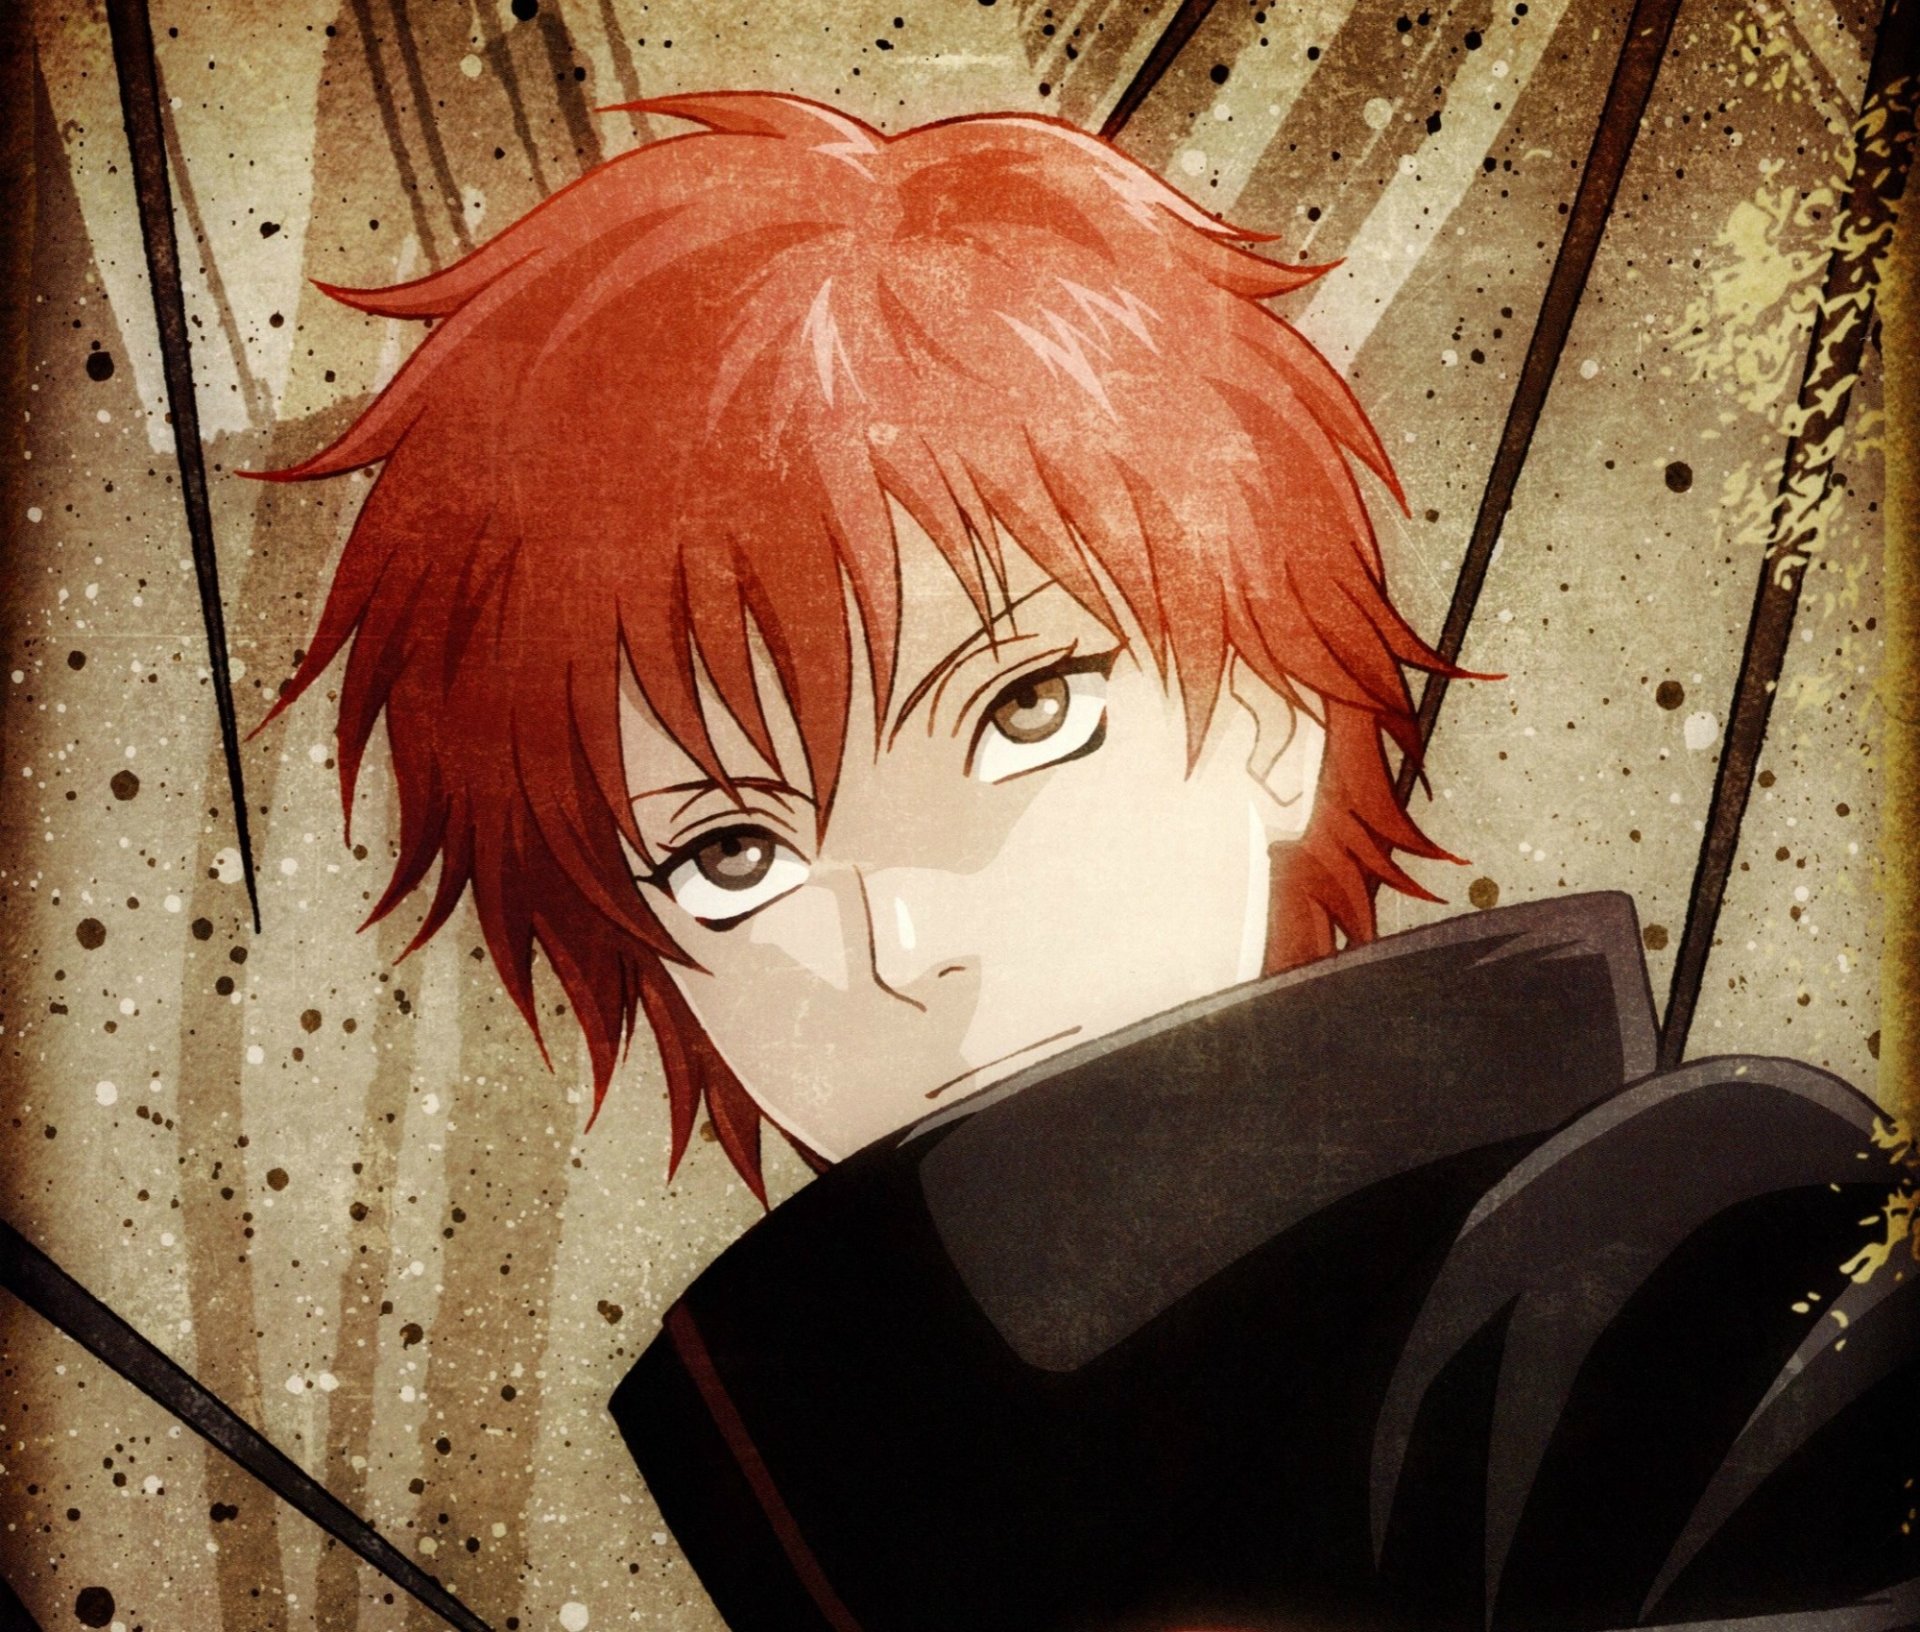 sasori wallpaper,anime,cartoon,red,red hair,illustration